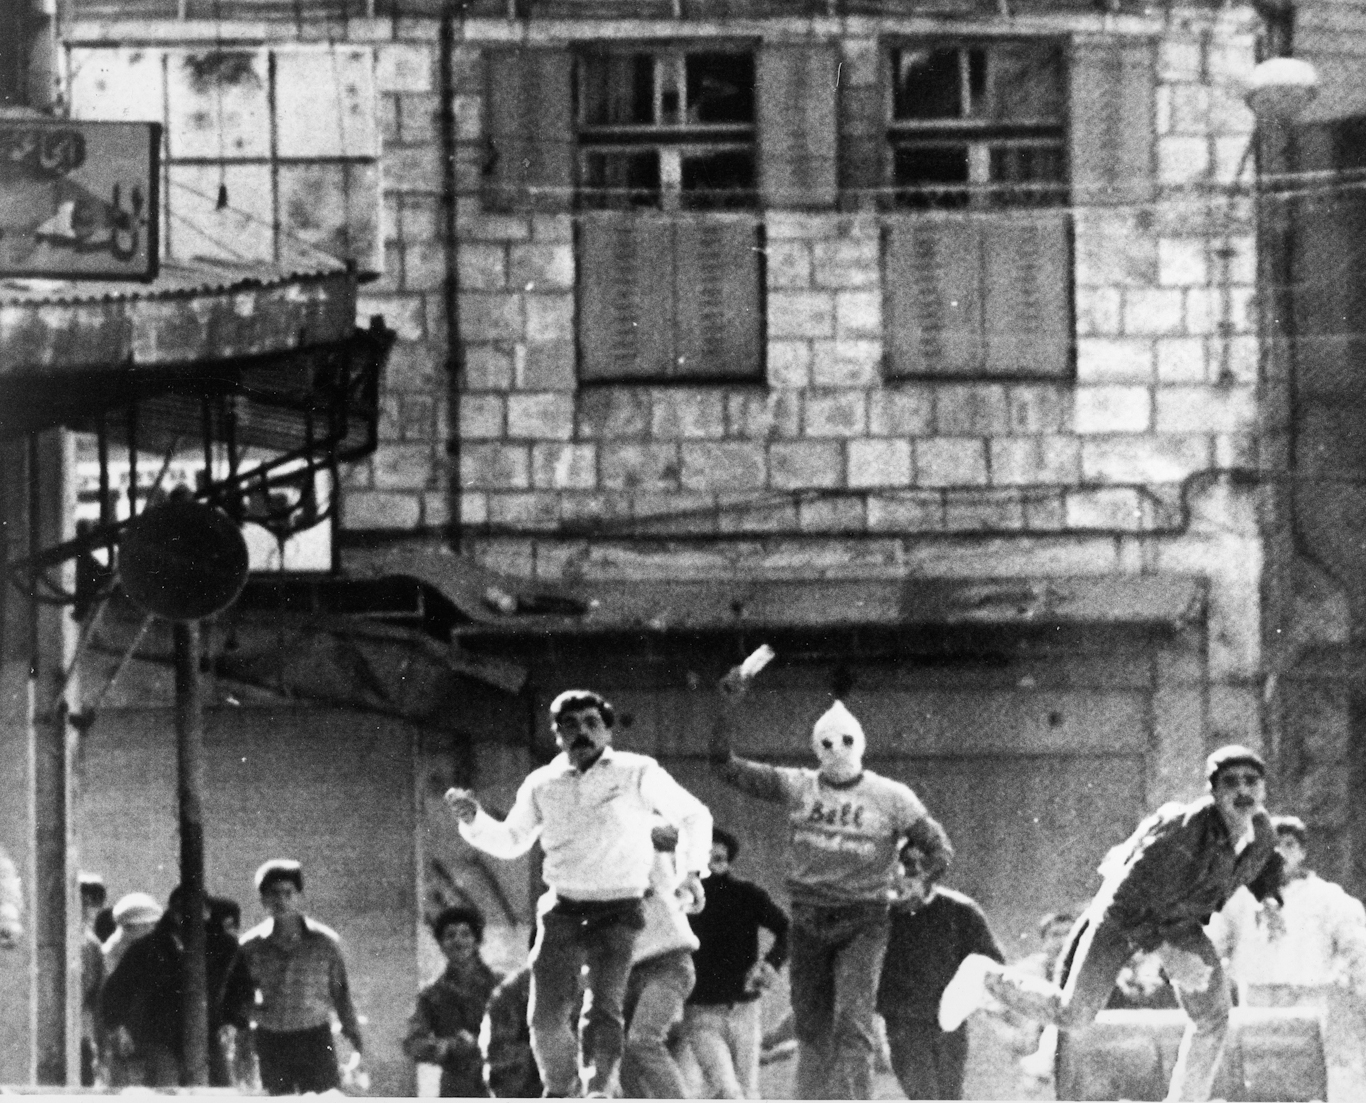 PALESTINIAN UPRISING 1987